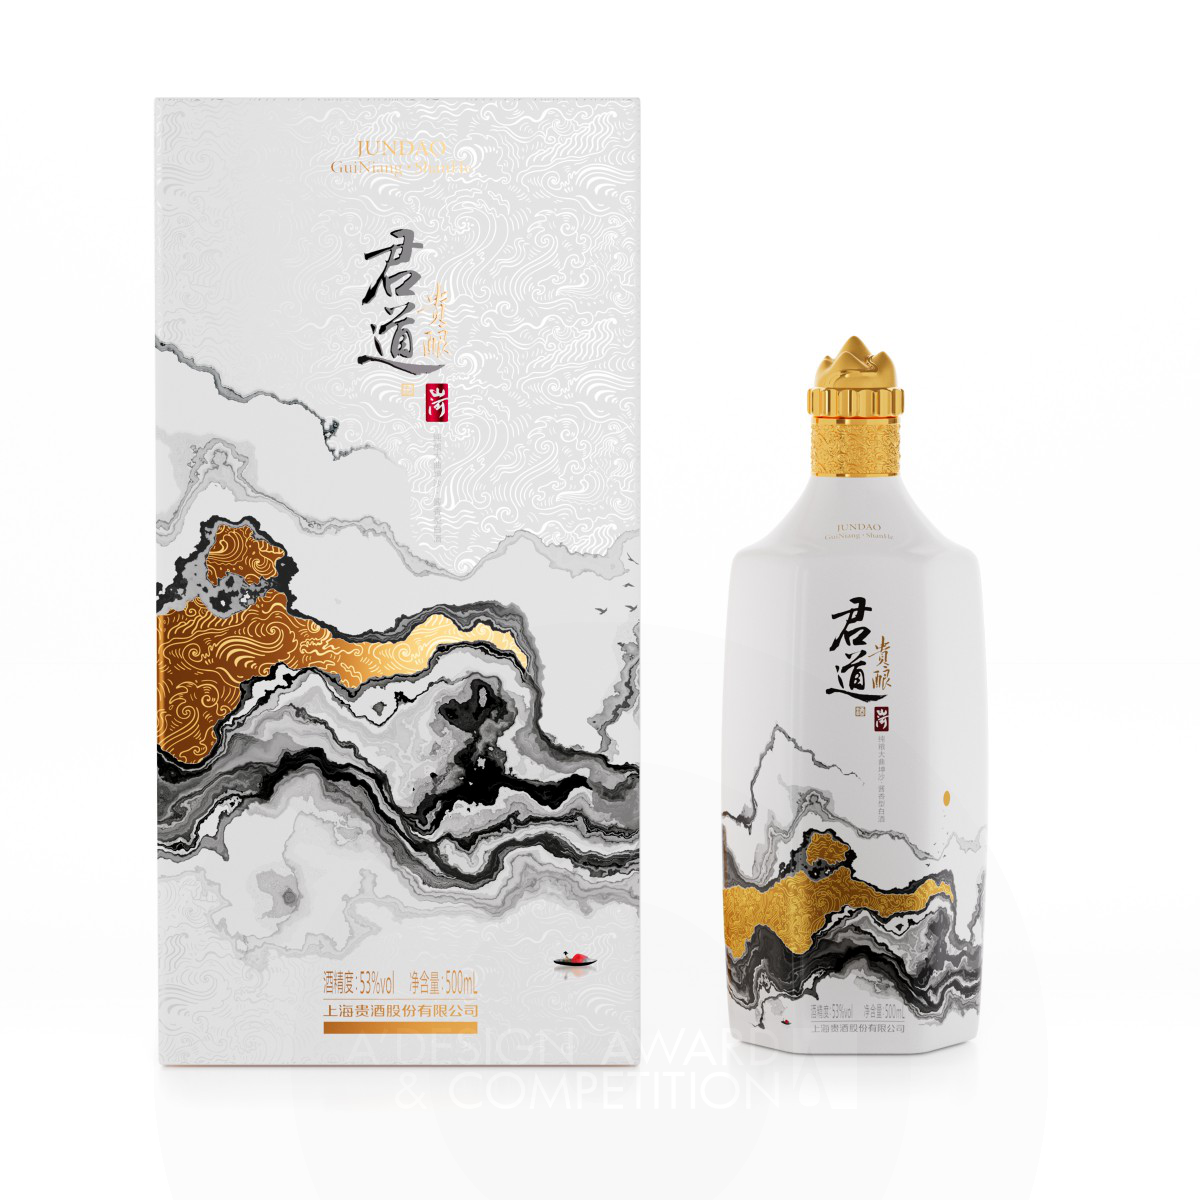 SHANGHAI GUIJIU CO., LTD. Baijiu Packaging